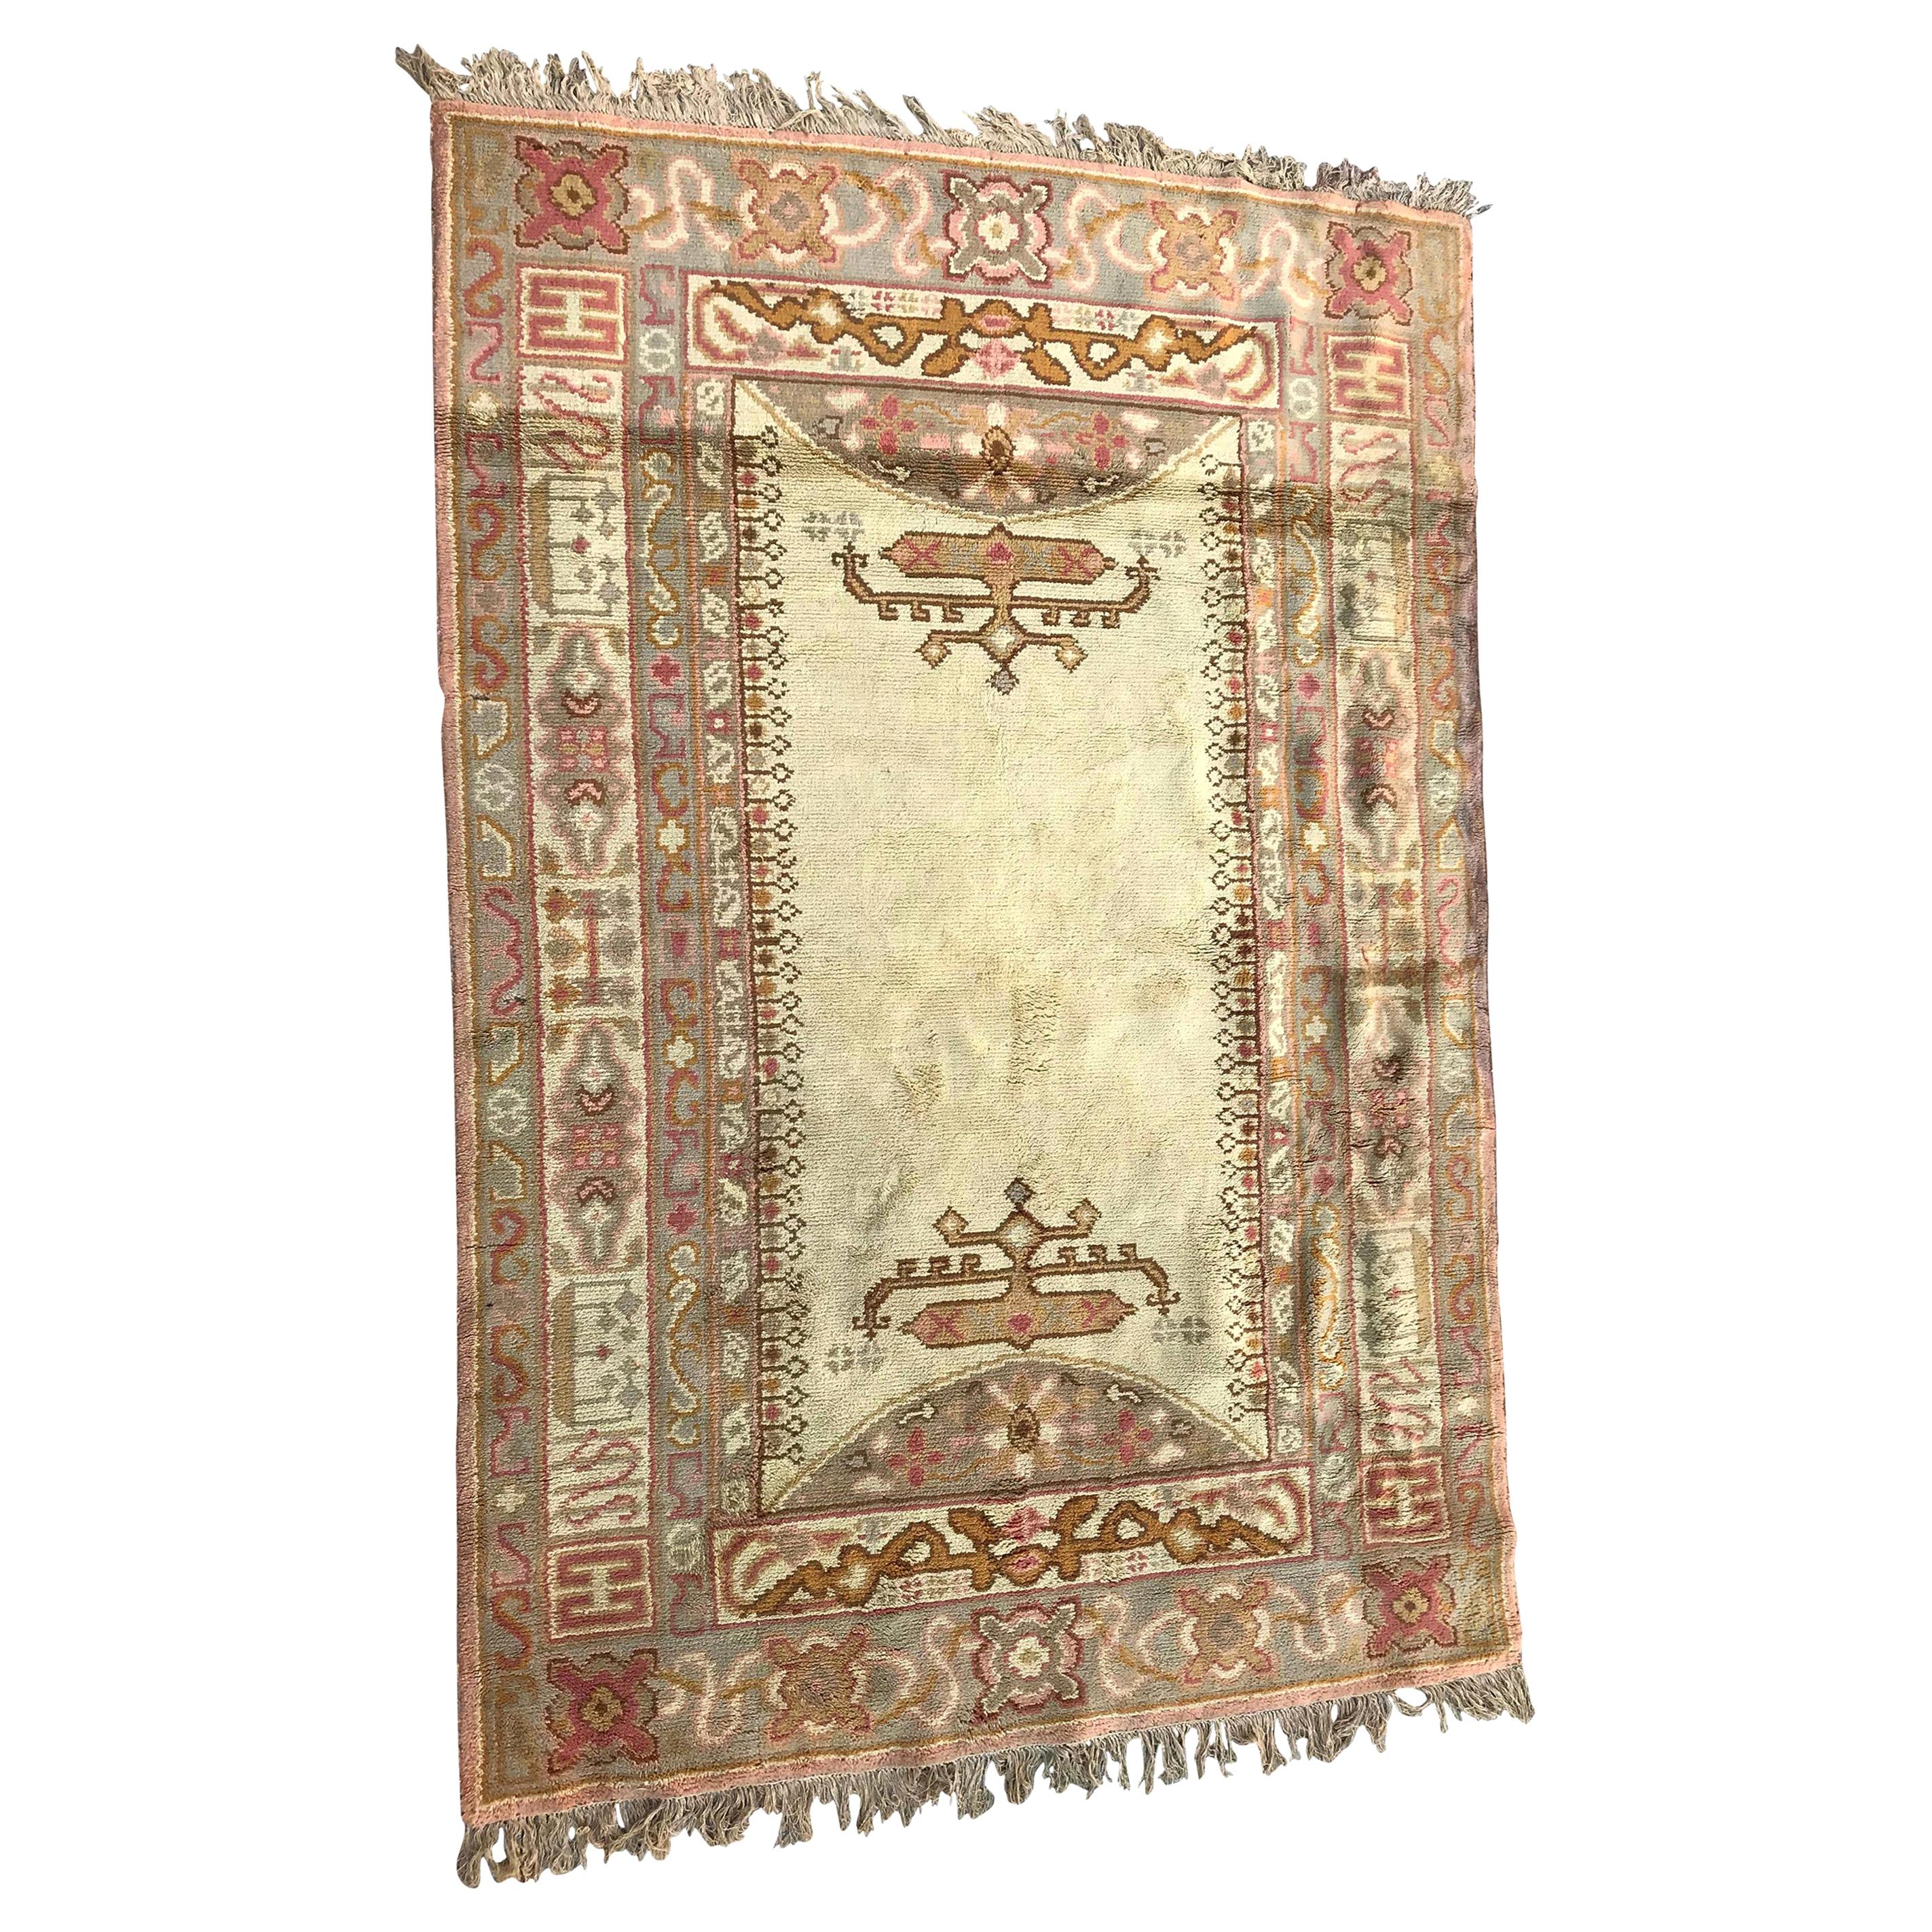 Antiker europäischer spanischer Teppich im Ushak-Stil